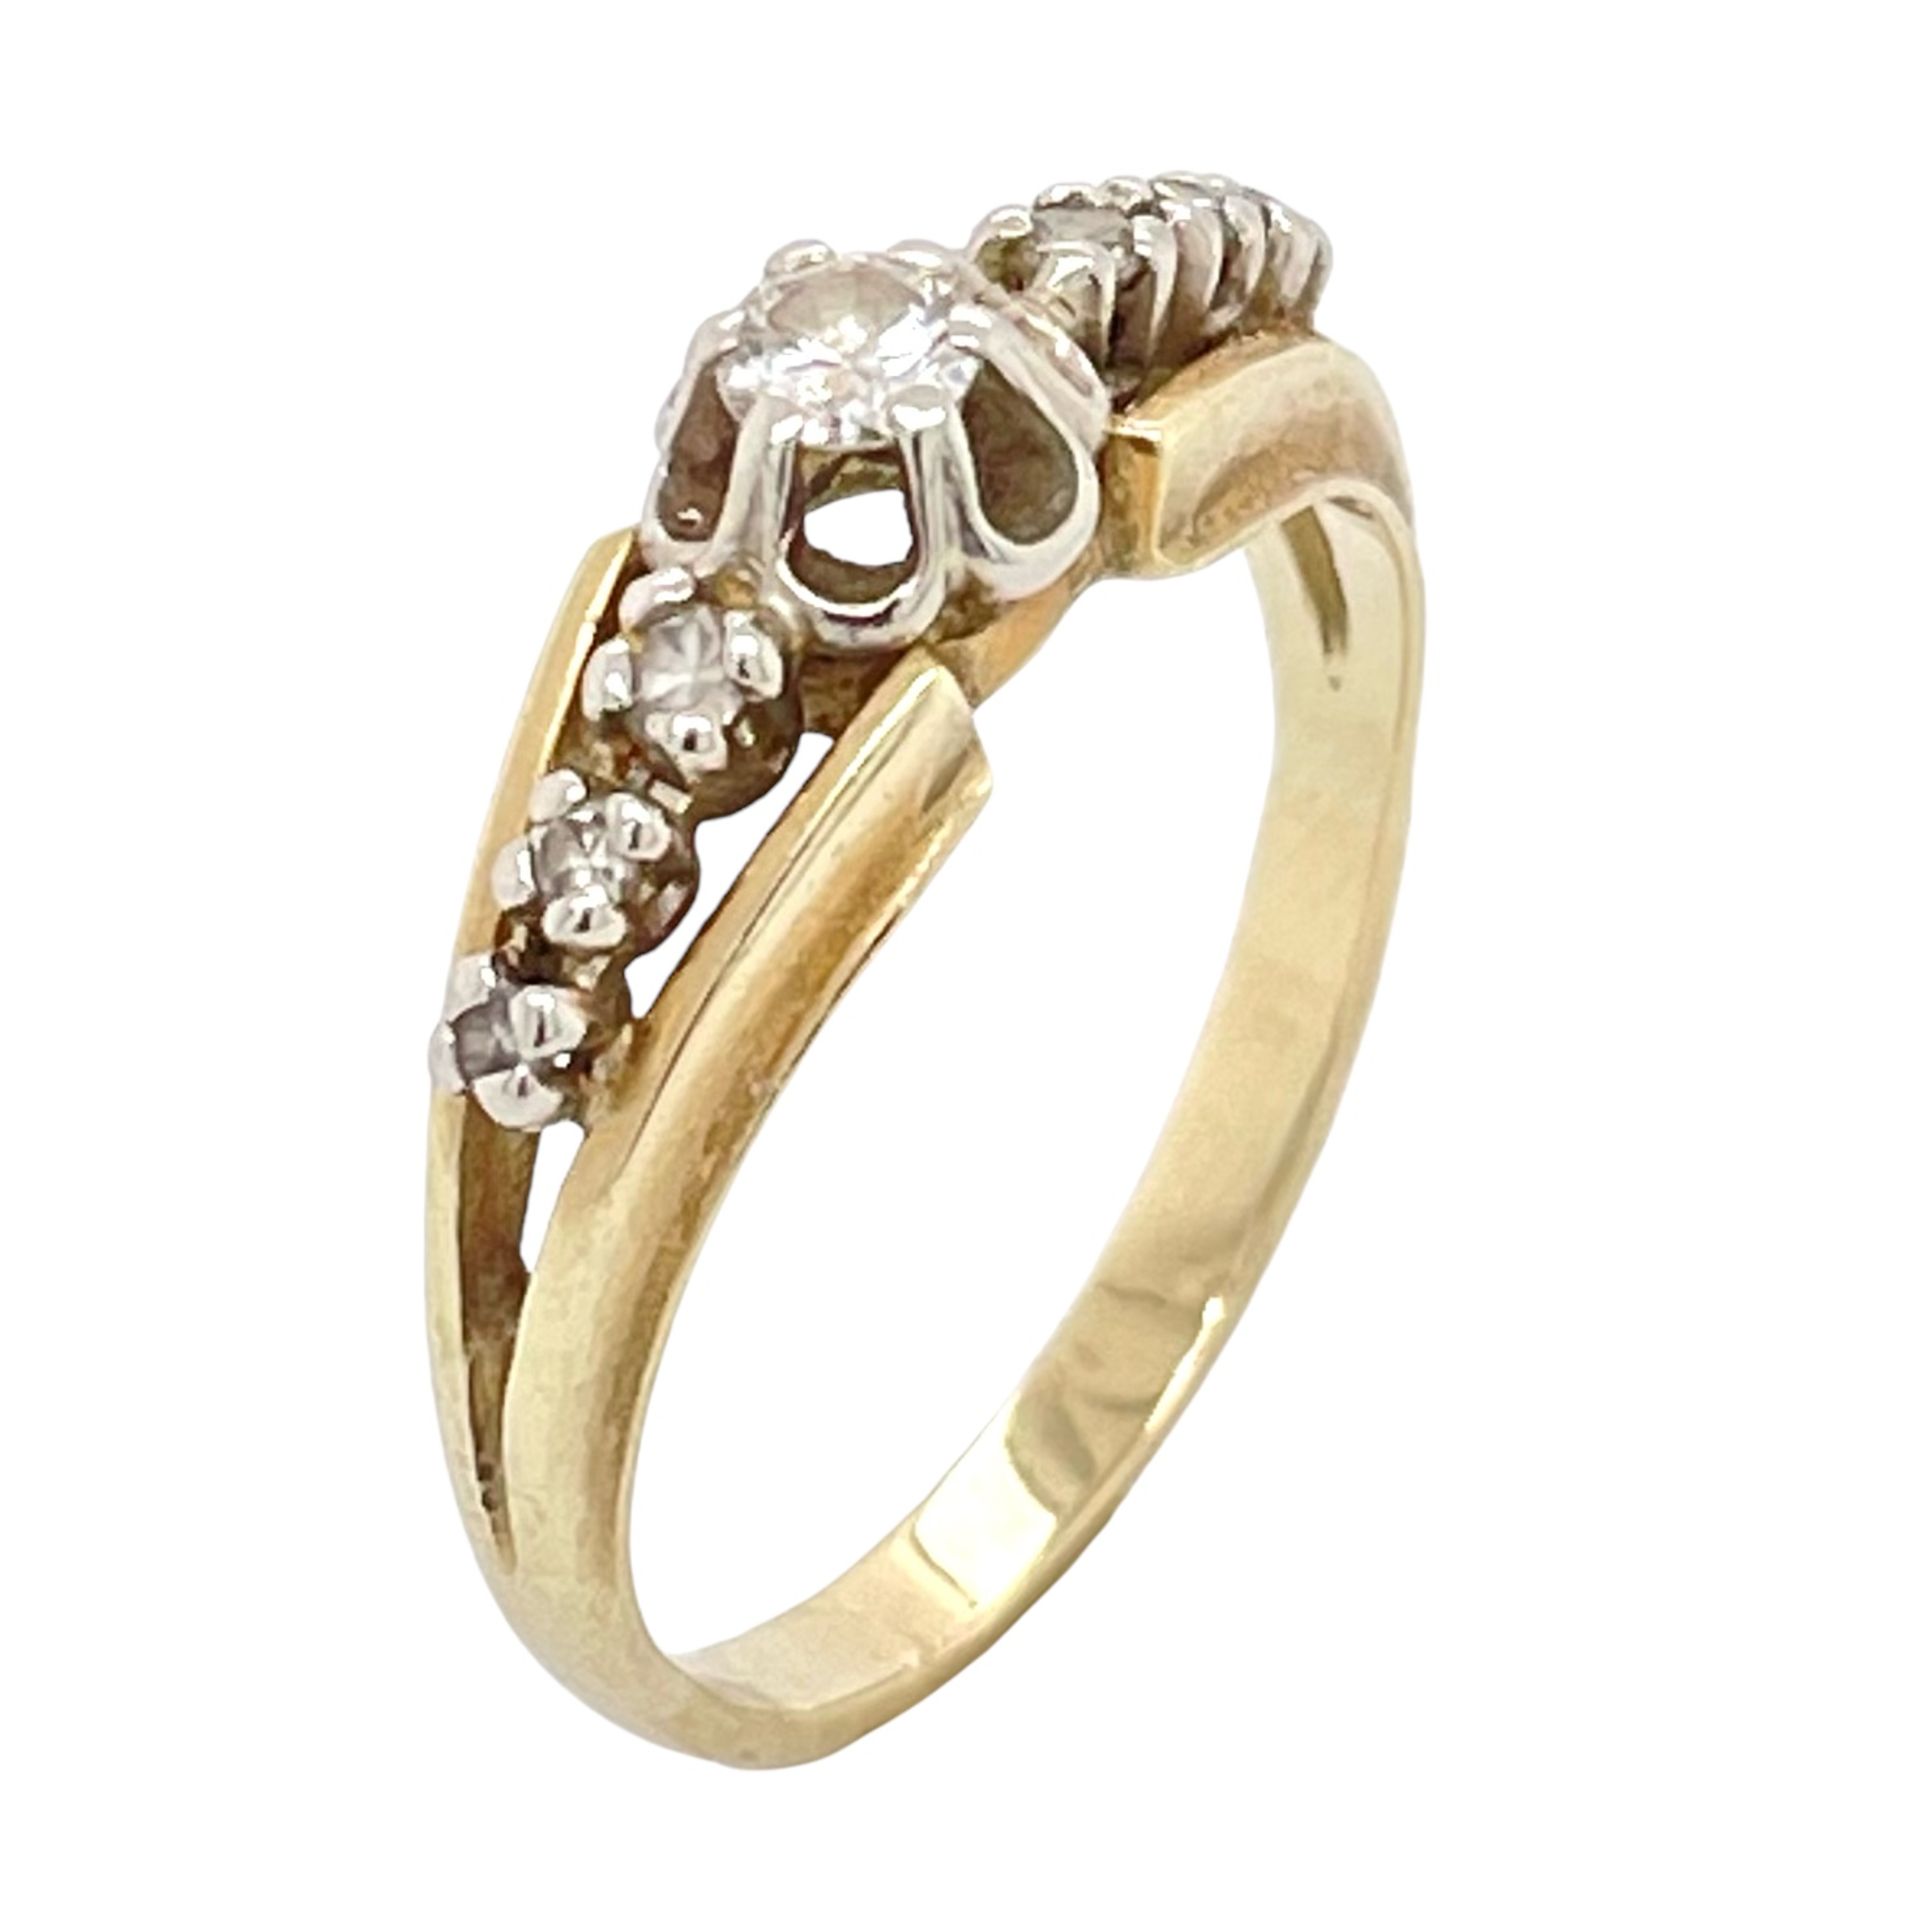 Ring 3,37g 585/- Gelbgold und Weißgold mit 7 Diamanten zus. ca. 0,16 ct., Ringgröße ca. 56